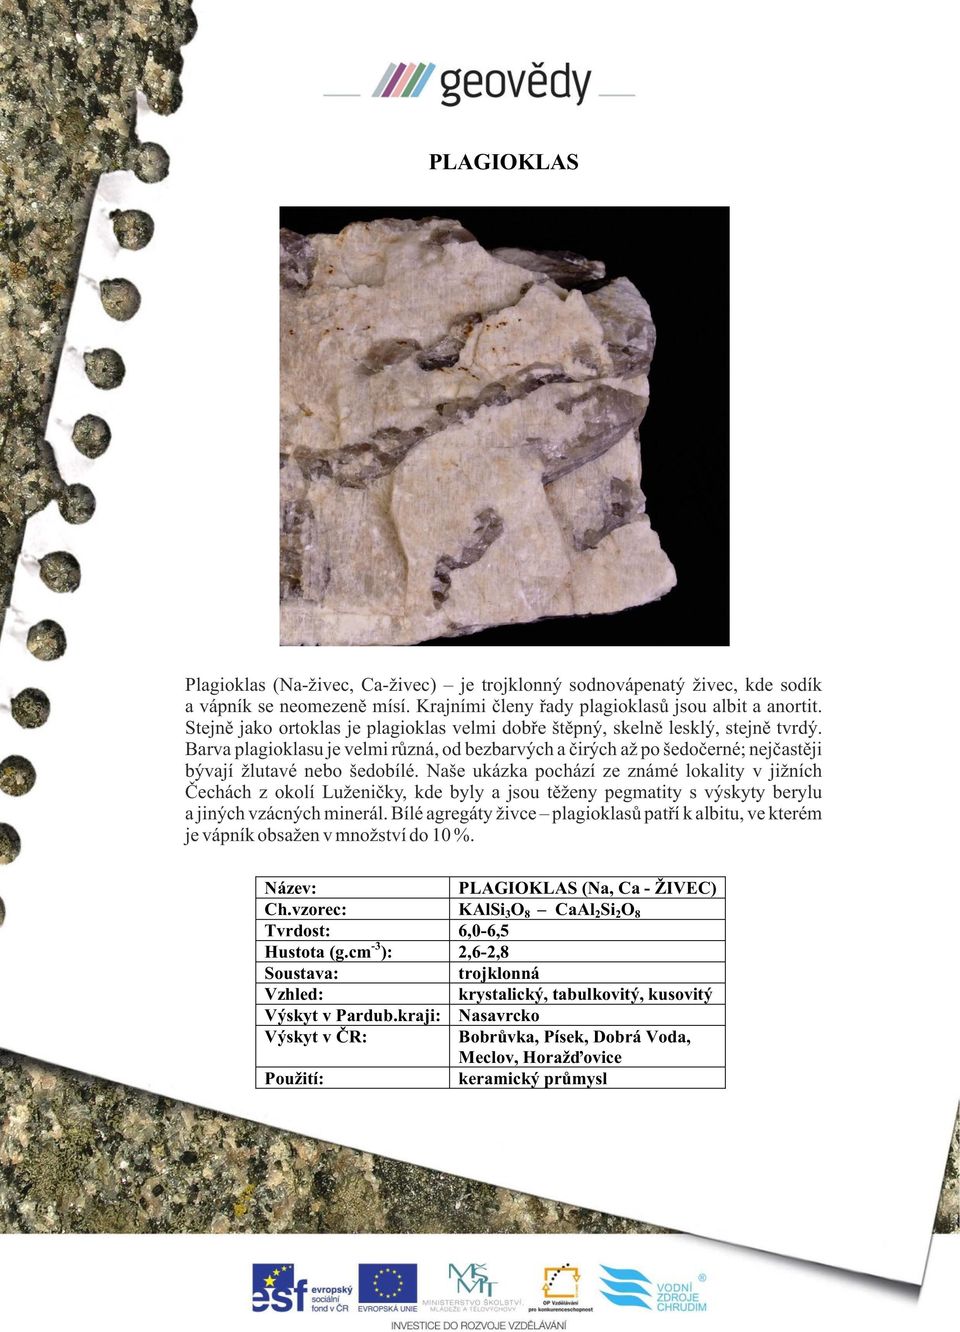 Naše ukázka pochází ze známé lokality v jižních Čechách z okolí Luženičky, kde byly a jsou těženy pegmatity s výskyty berylu a jiných vzácných minerál.